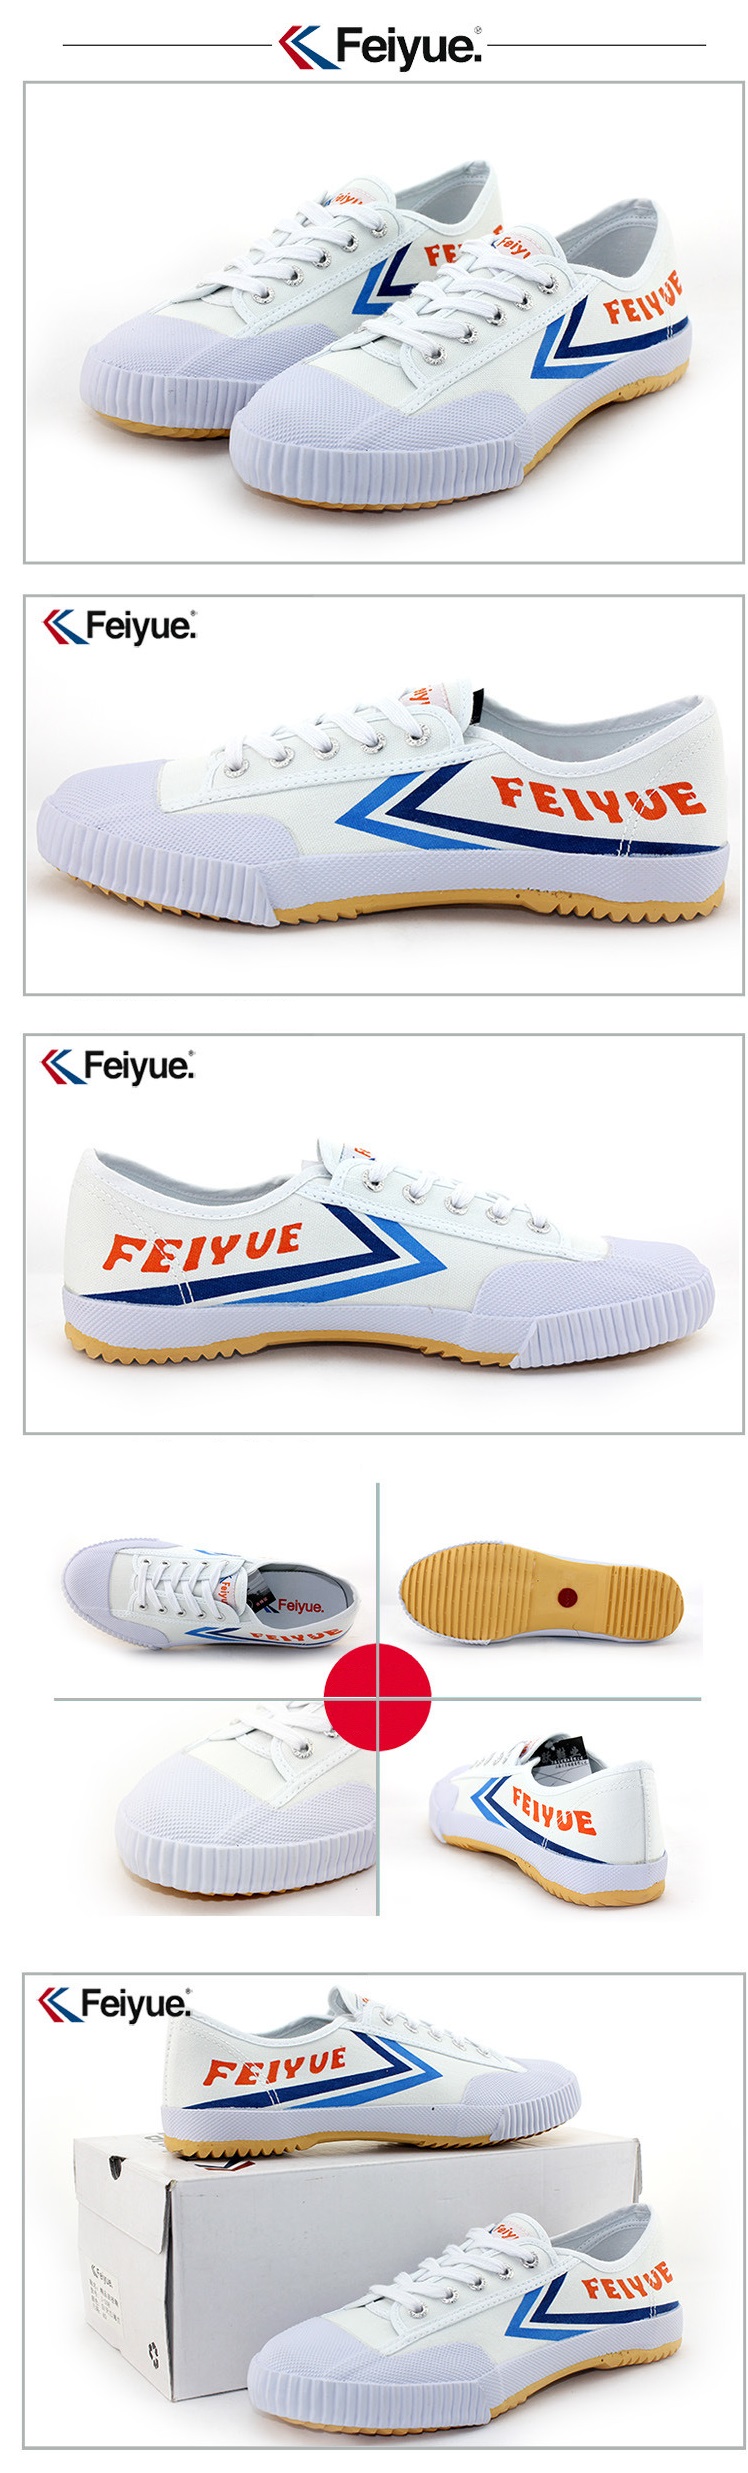 Feiyue Lo Plain Sneaker